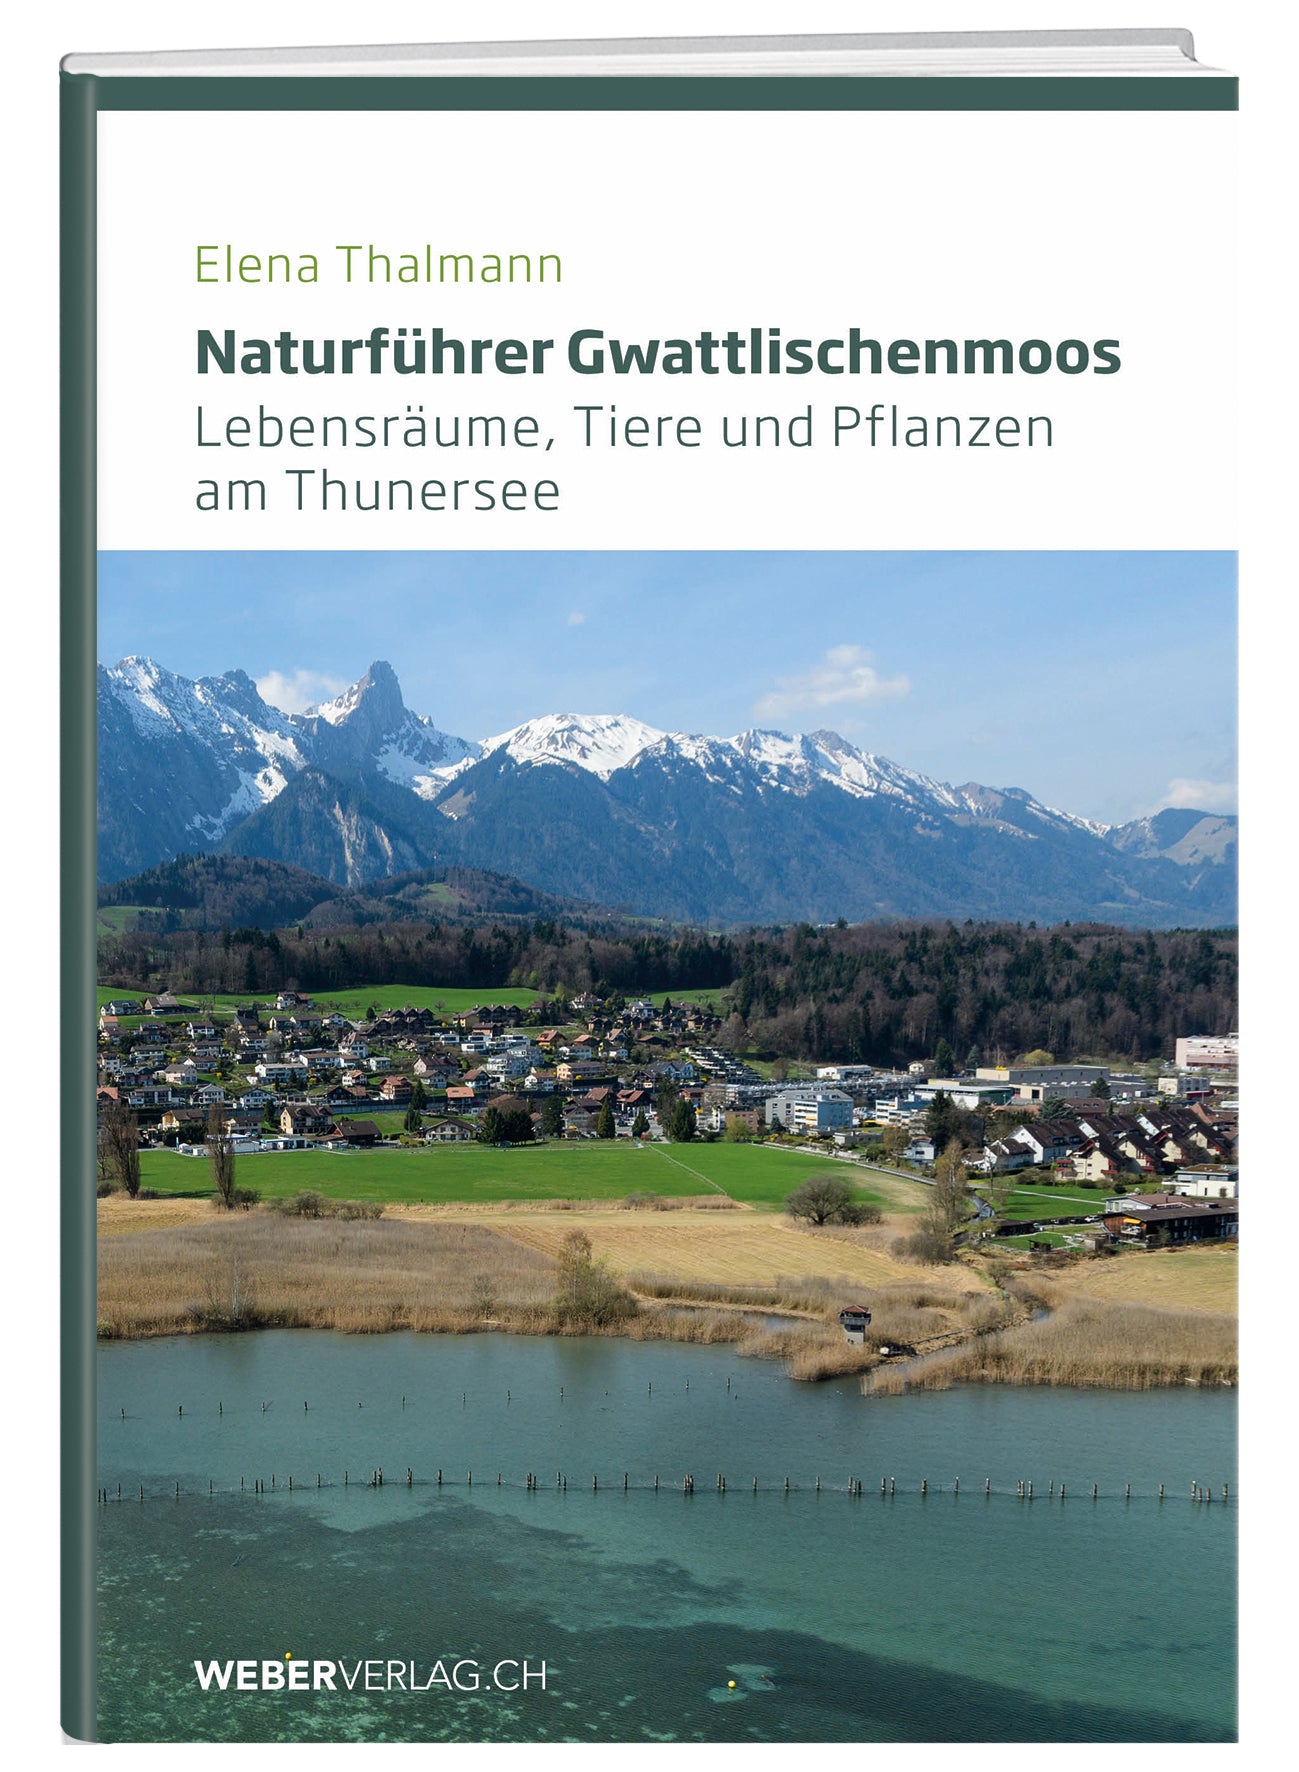 Elena Thalmann | Naturführer Gwattlischenmoos - • WEBER VERLAG